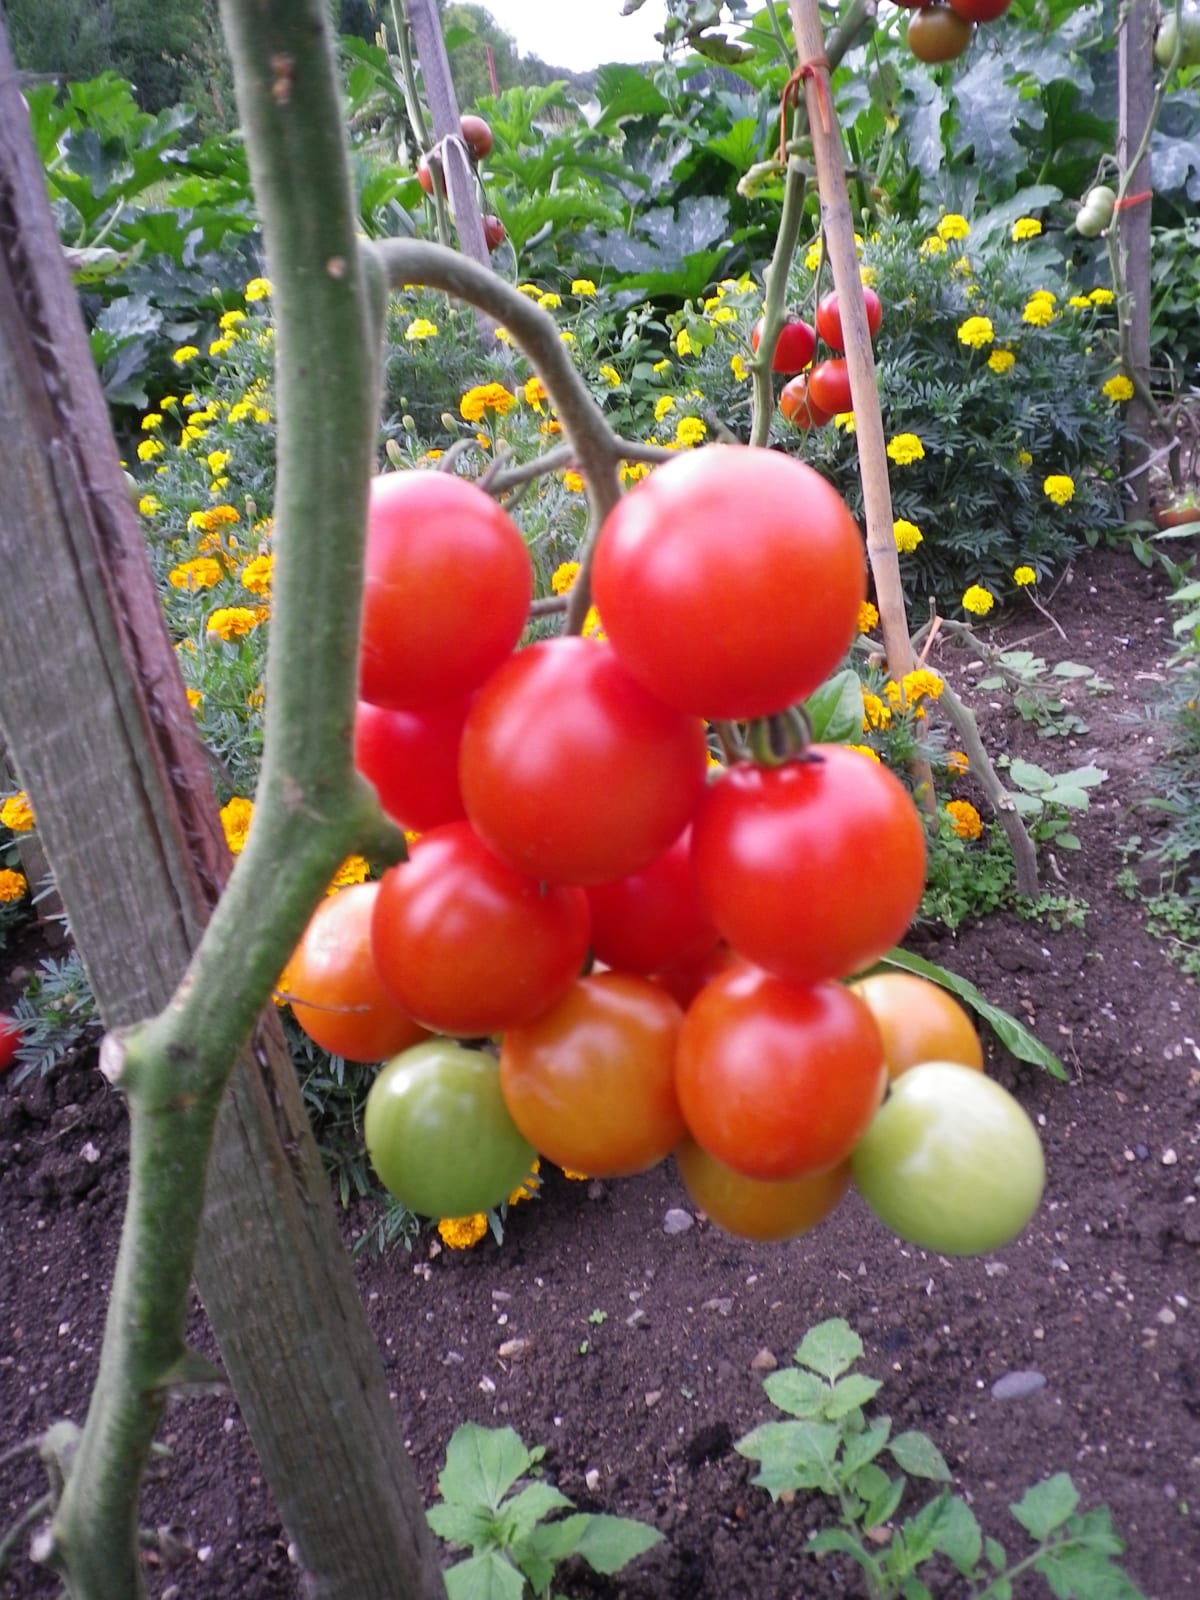 Odrůda Gallant F1 patří k nejoblíbenějším odrůdám rajčat u nás